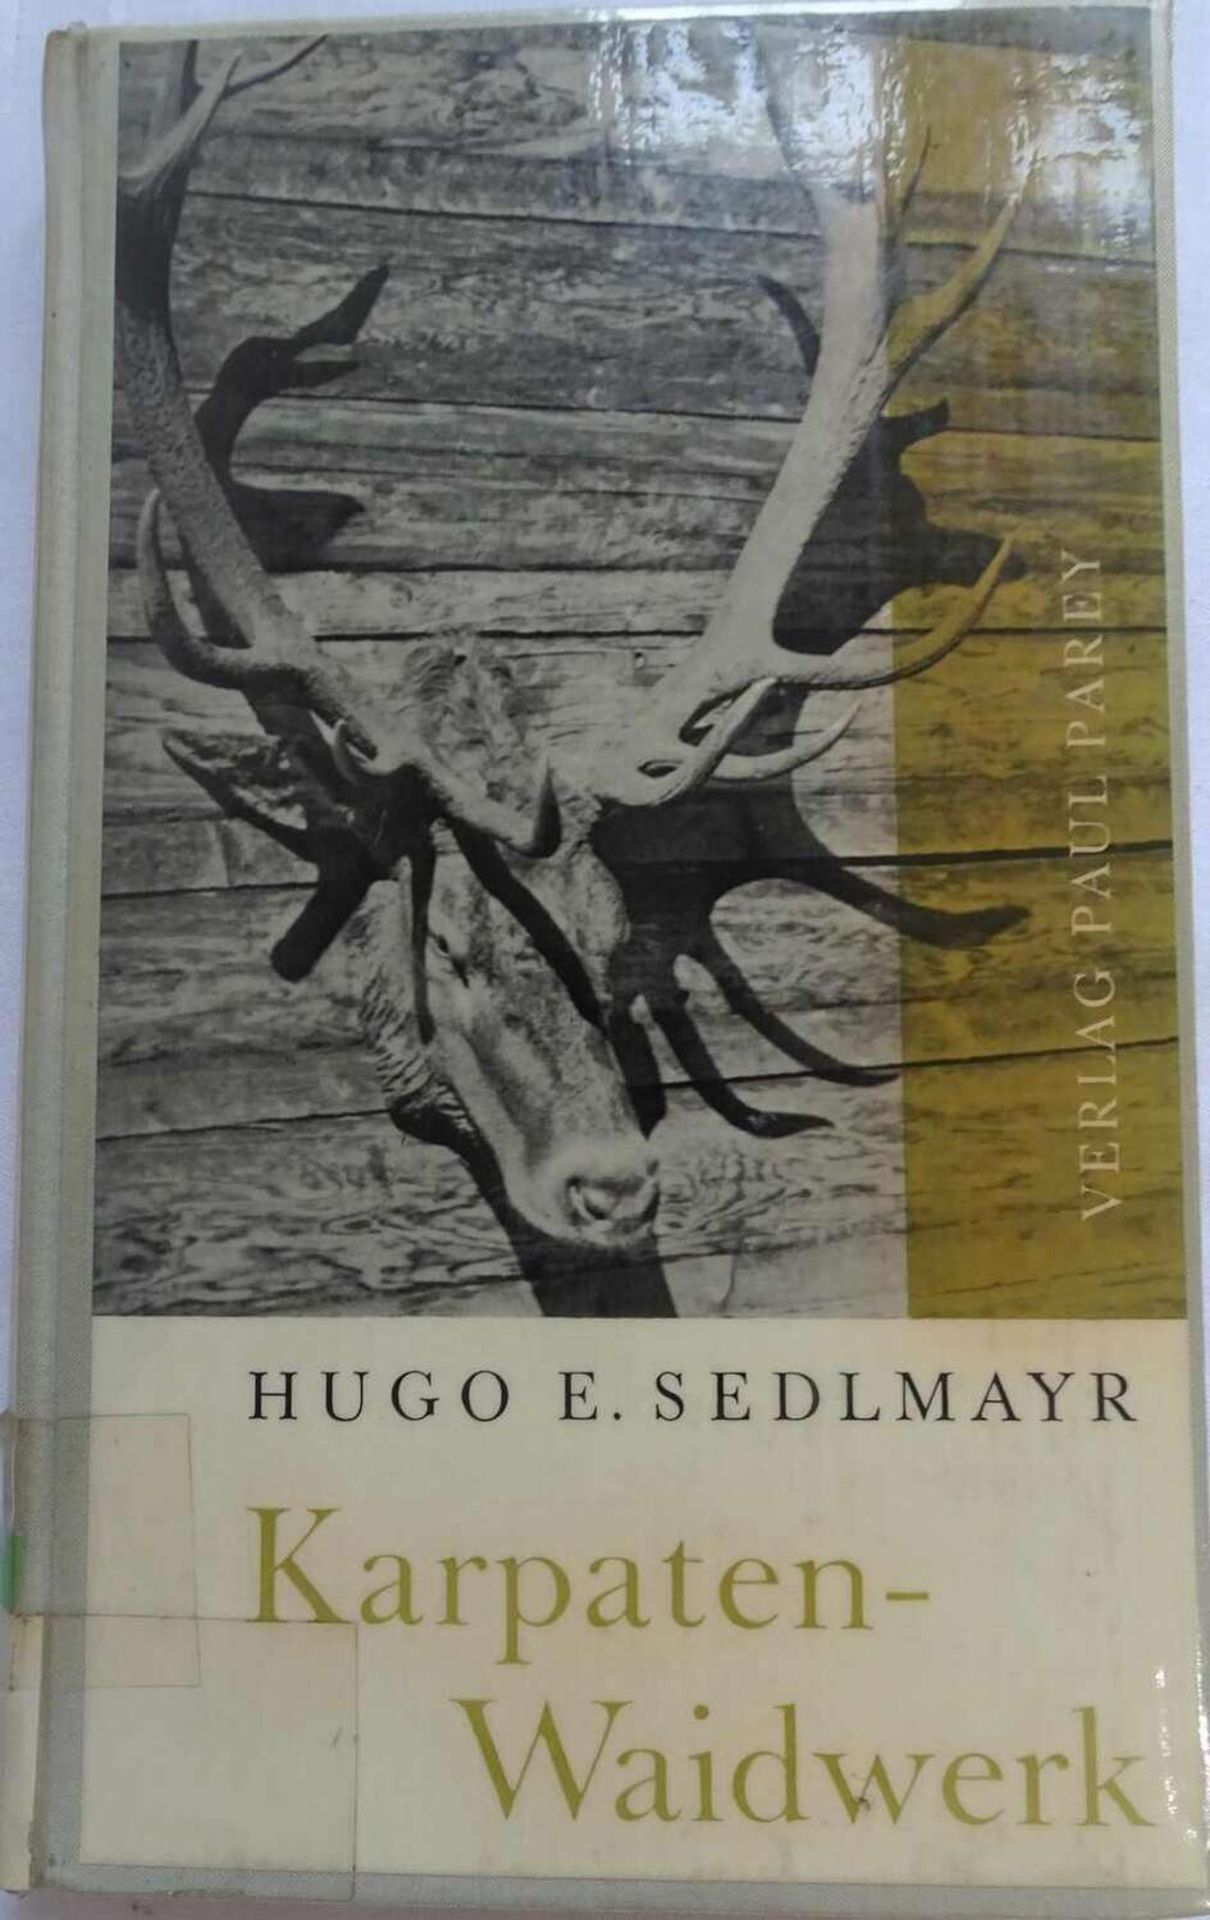 Hugo E. Sedlmayer, Karpaten-Waidwerk, Dreißig Jahre Jagd in den Karpaten. Verlag Paul Parey, Berli